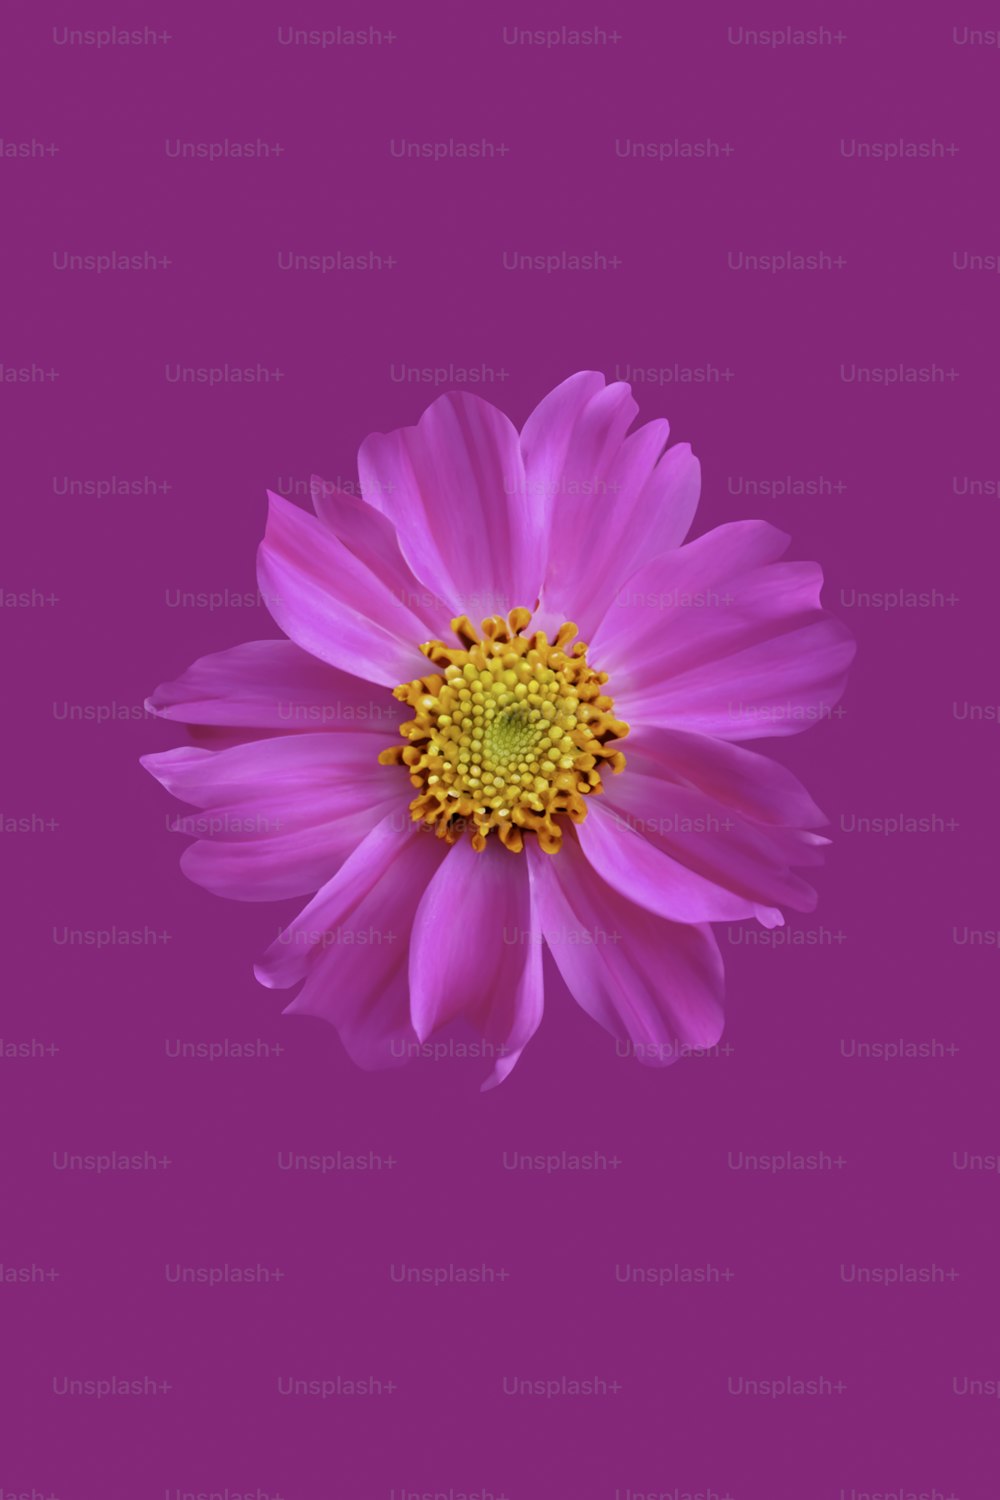 eine rosa Blume mit einer gelben Mitte auf rosa Hintergrund